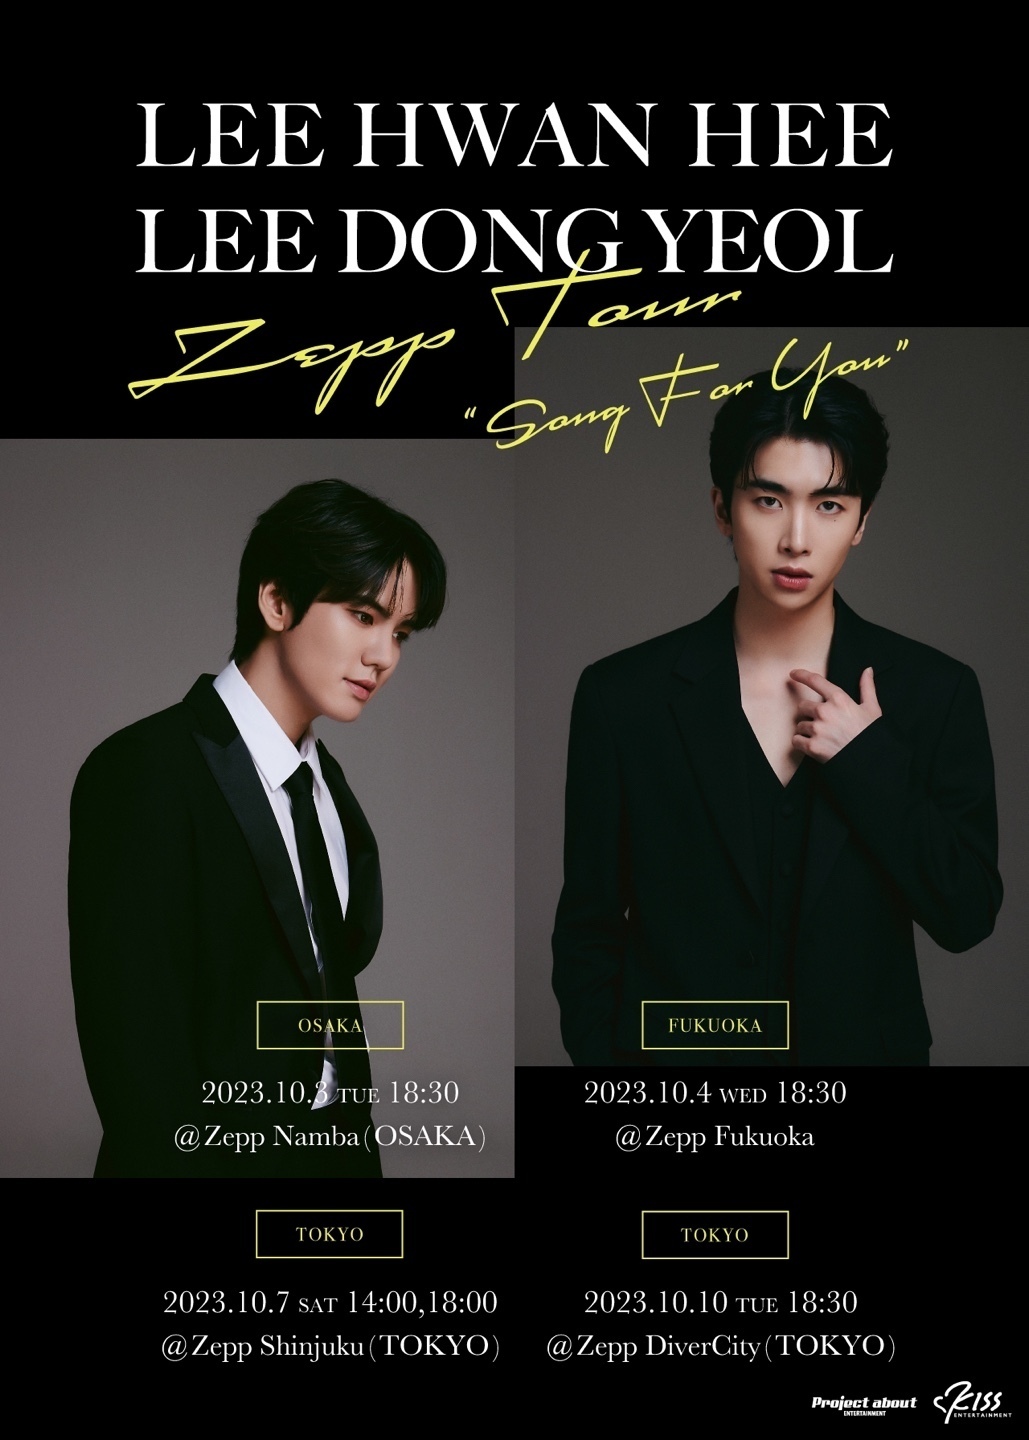 10/1更新)LEE HWAN HEE×LEE DONG YEOL Zepp Tour『Song For You』開催